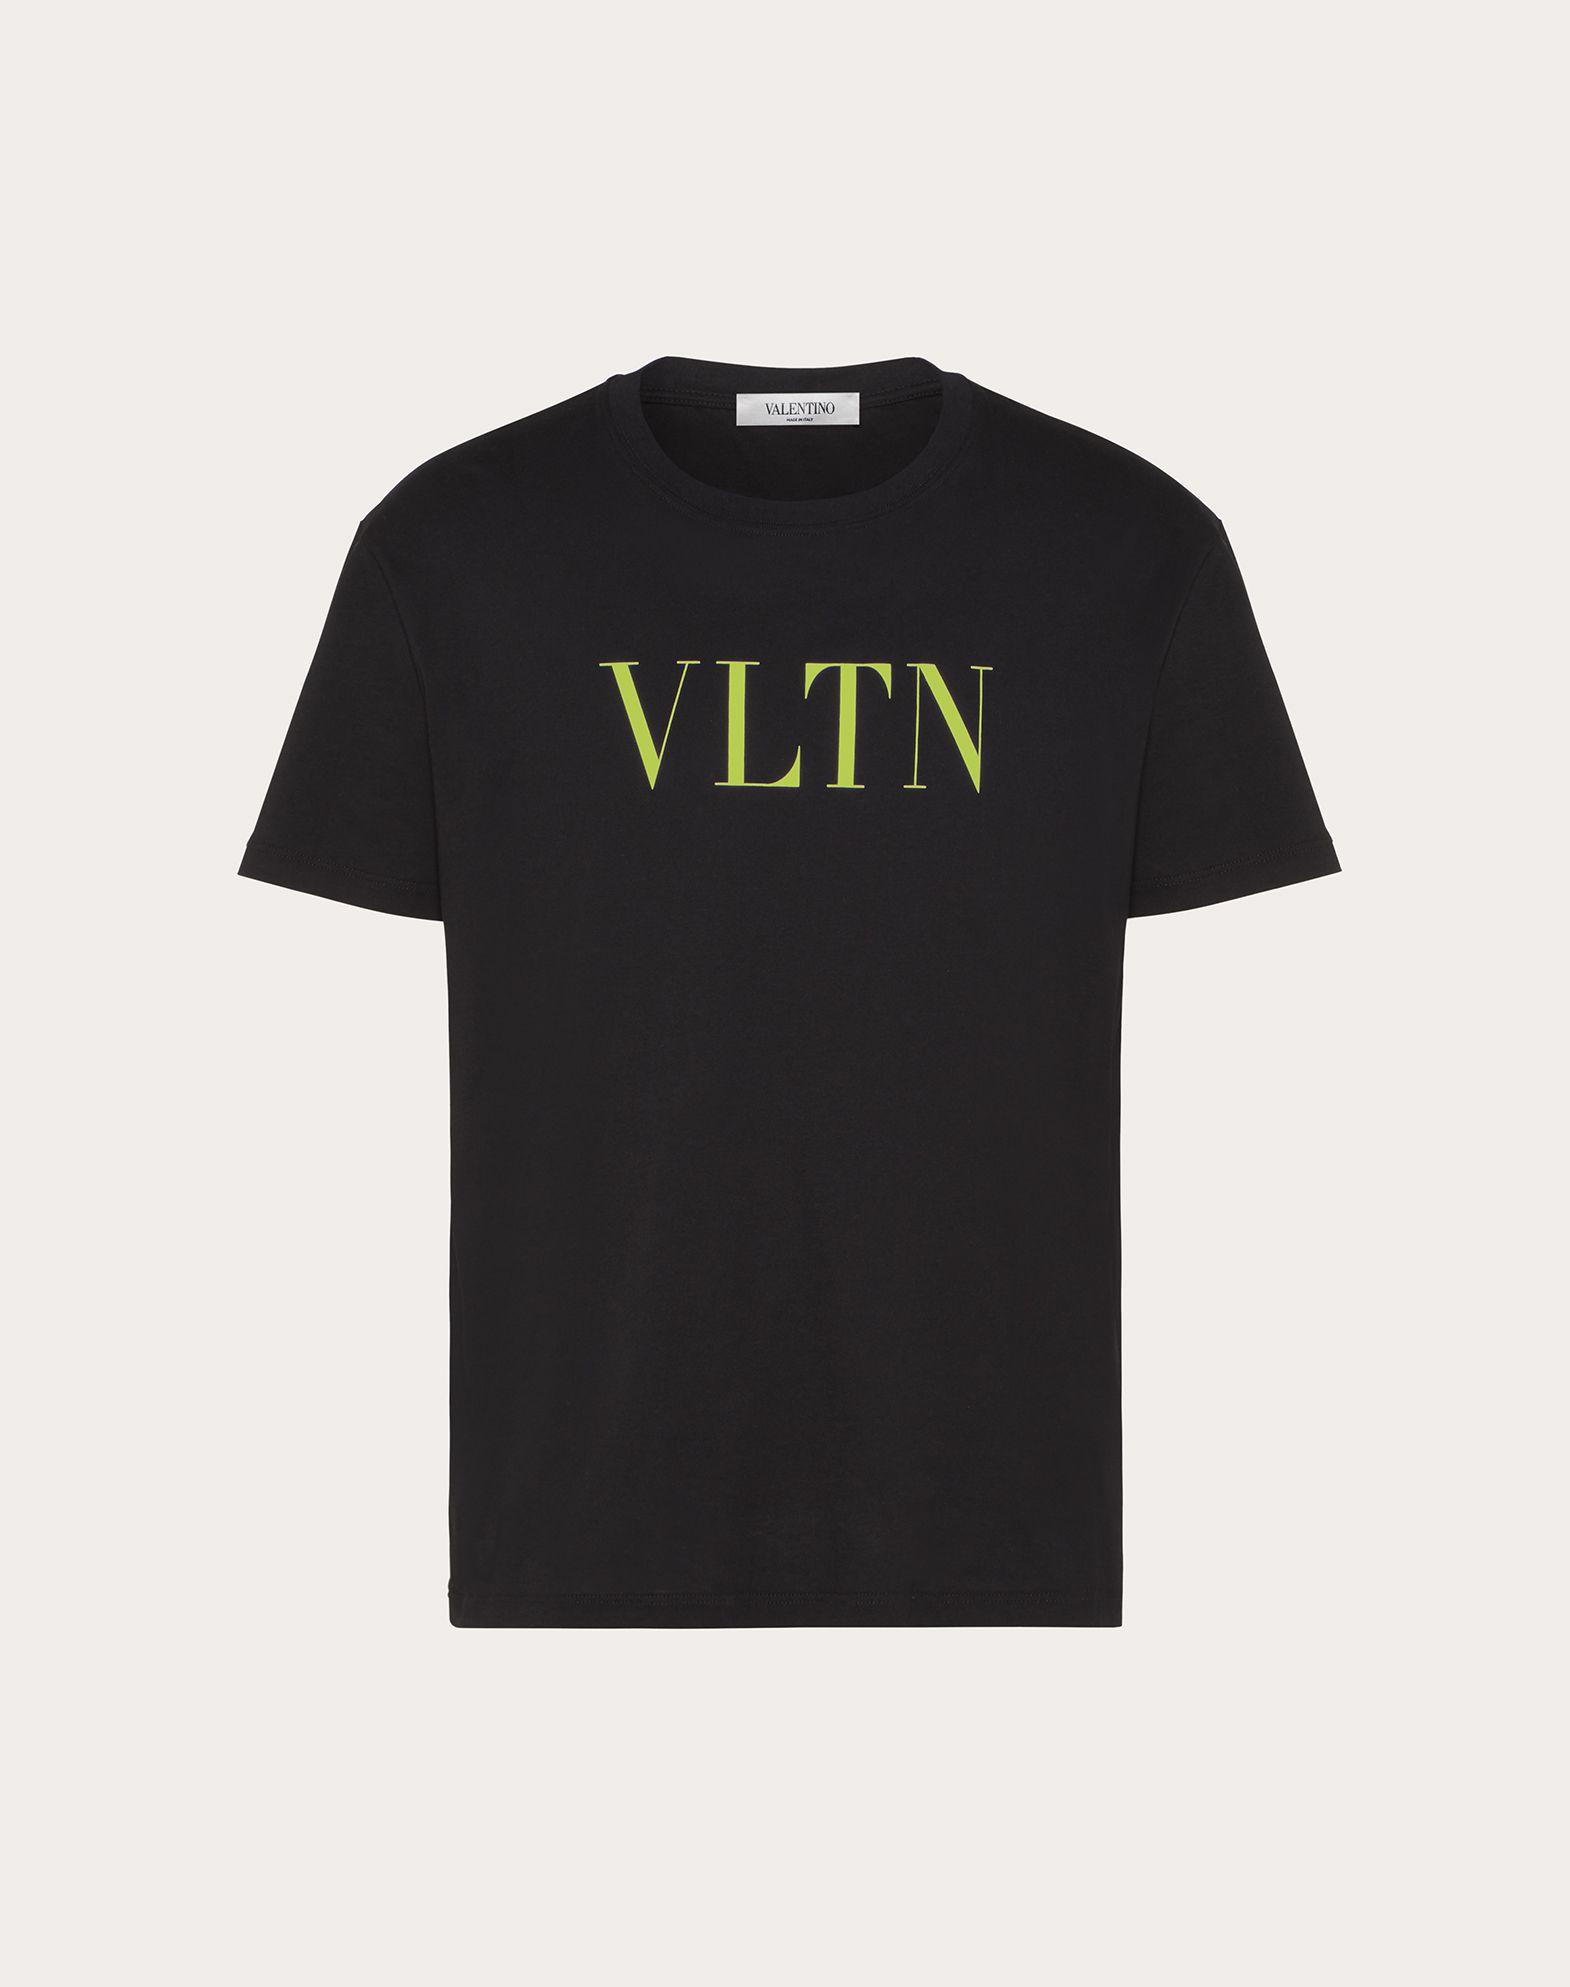 Valentino Vltn T-shirt in Black/Neon Yellow (Black) for Men - Lyst